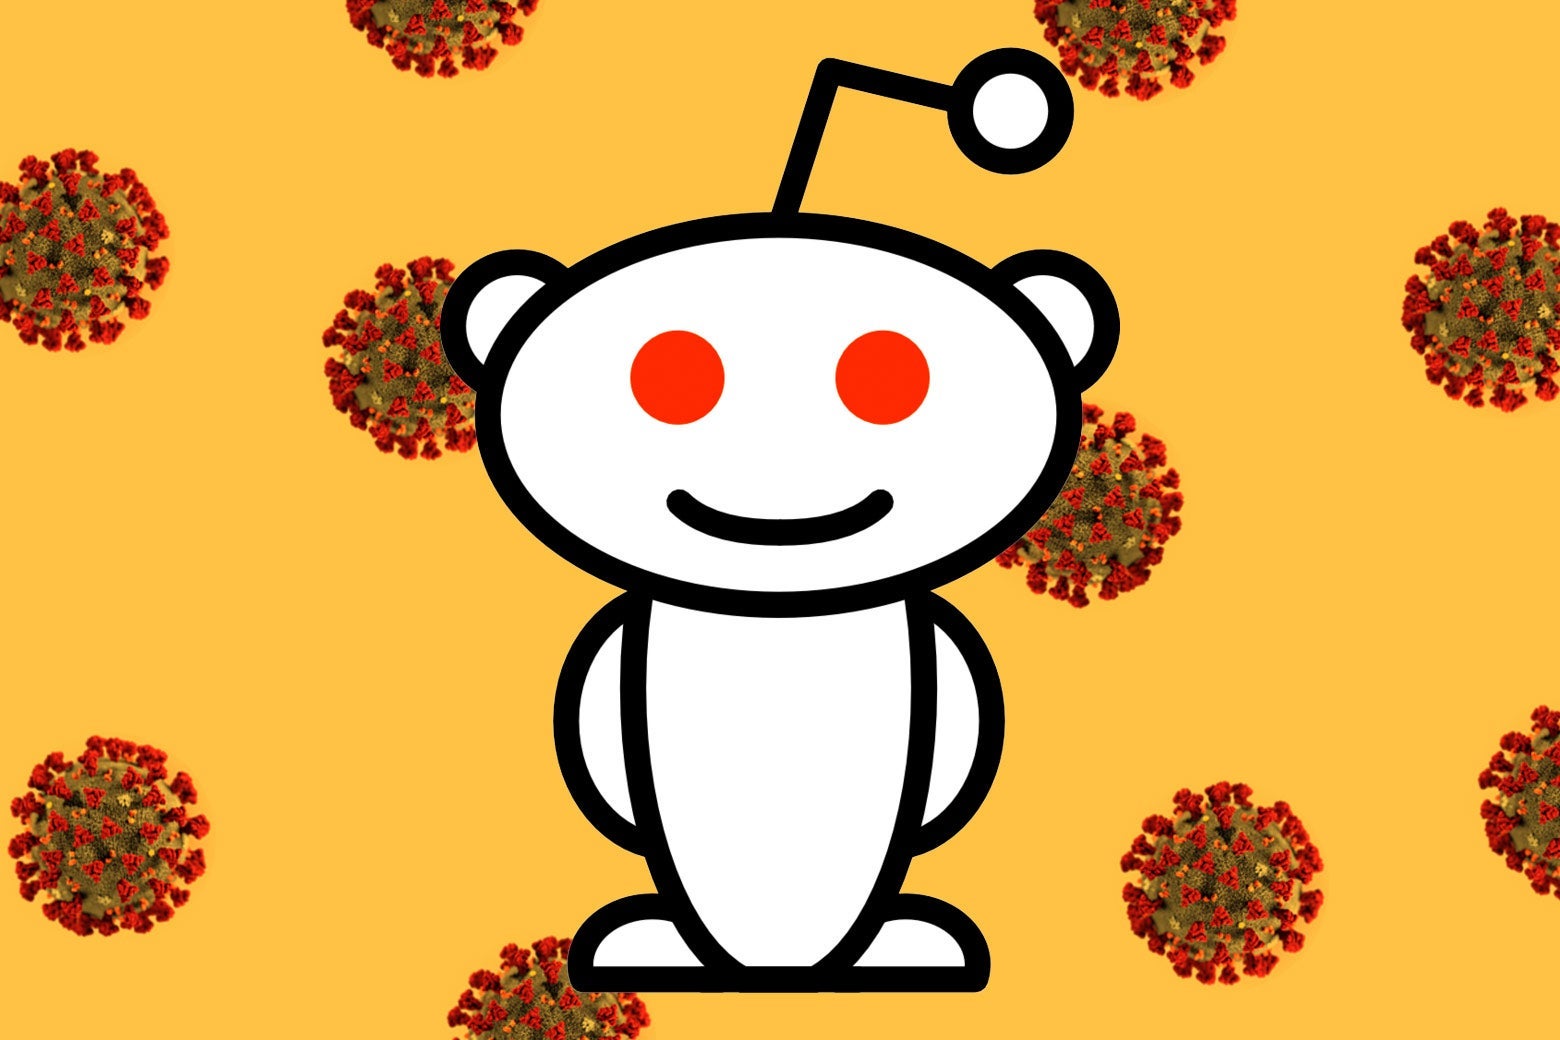 Reddit logo and 3D model of coronavirus.